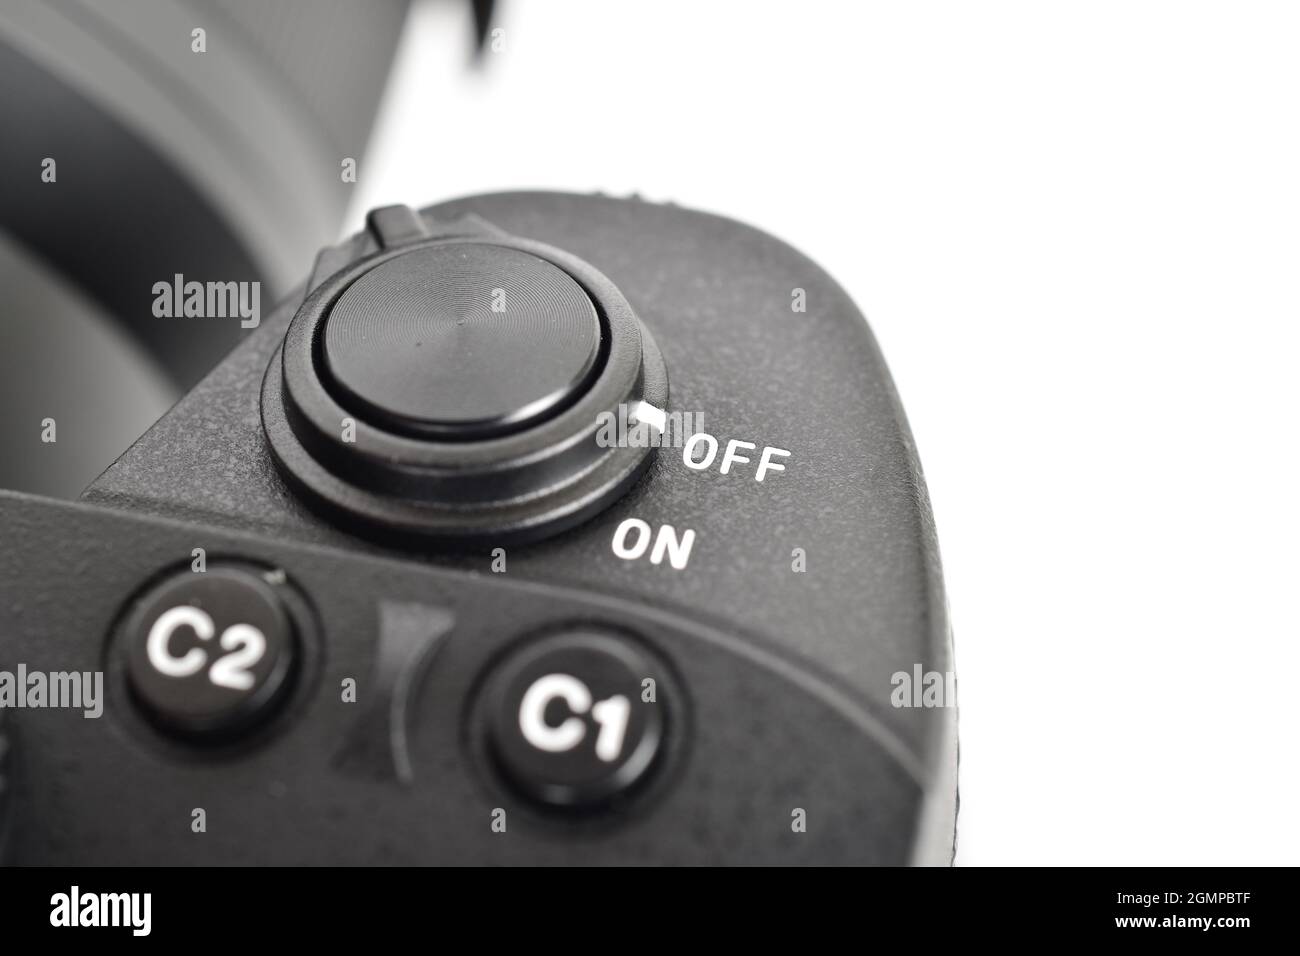 Bouton Marche/Arrêt et bouton d'obturateur de l'appareil photo Banque D'Images